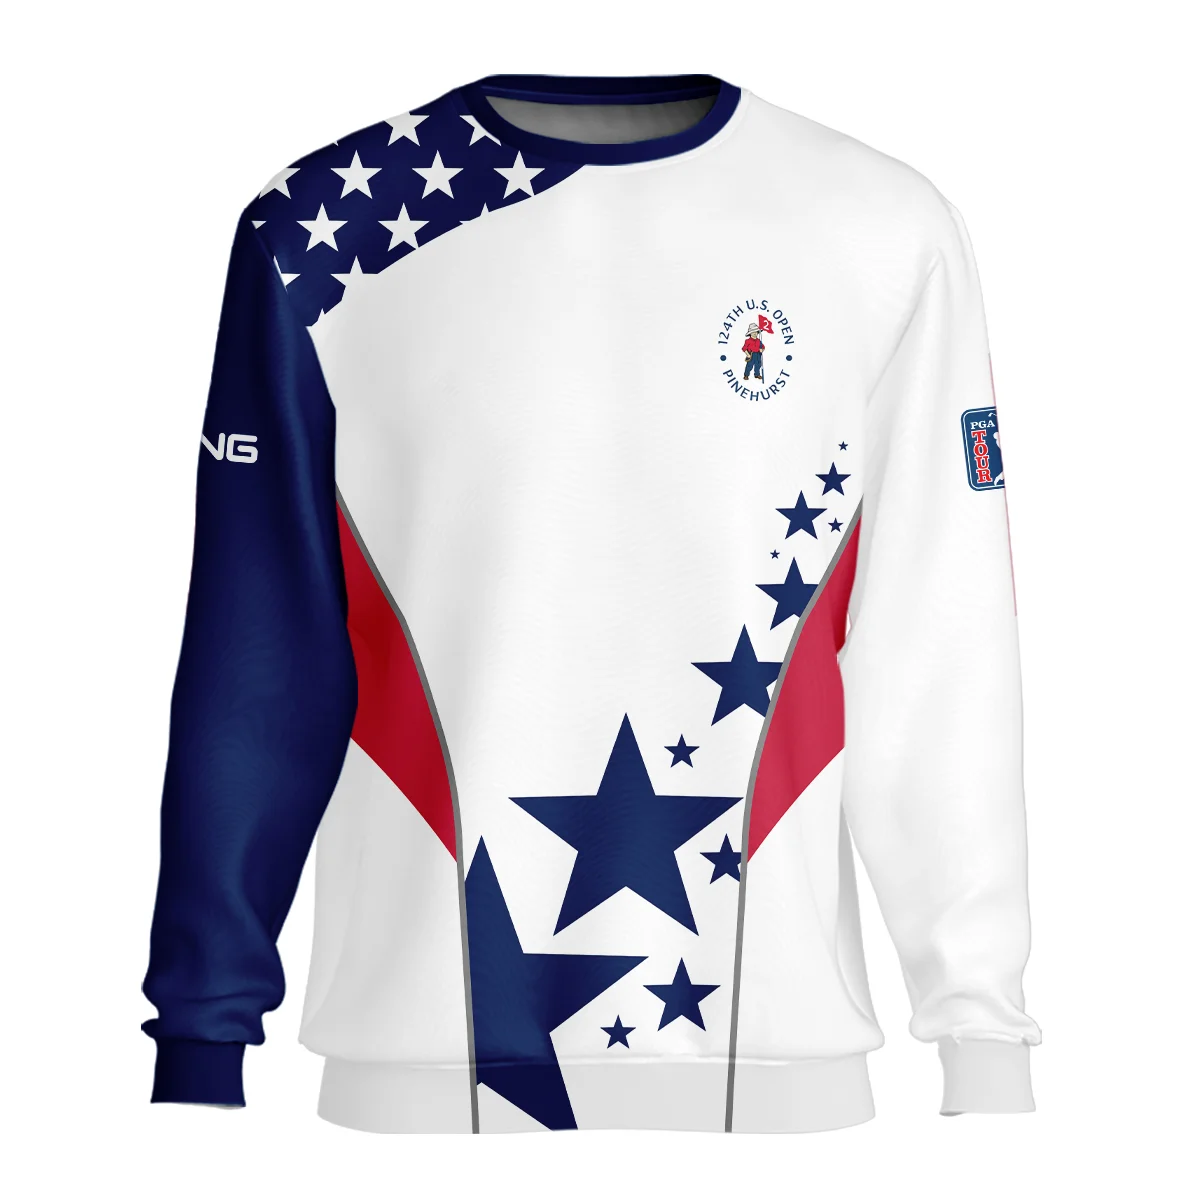 124th U.S. Open Pinehurst Ping Stars US Flag White Blue Mandarin collar Quater-Zip Long Sleeve